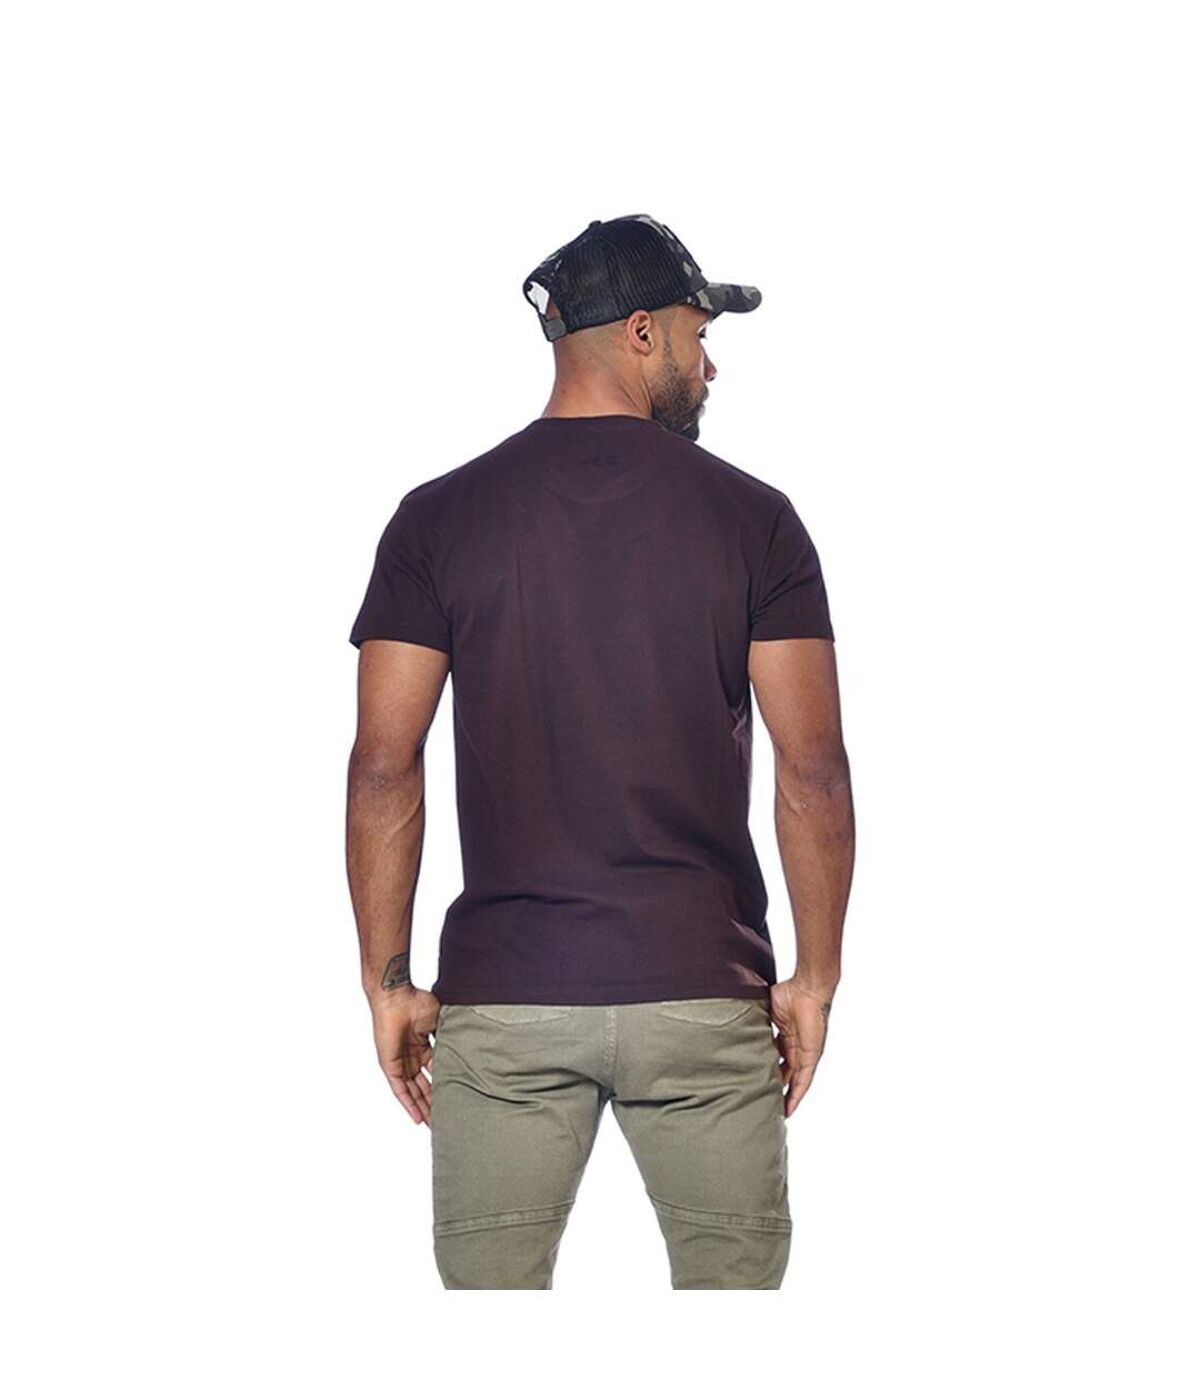 Tee Shirt Homme 100% Coton, T shirt Homme Regular, Doux et Confortable